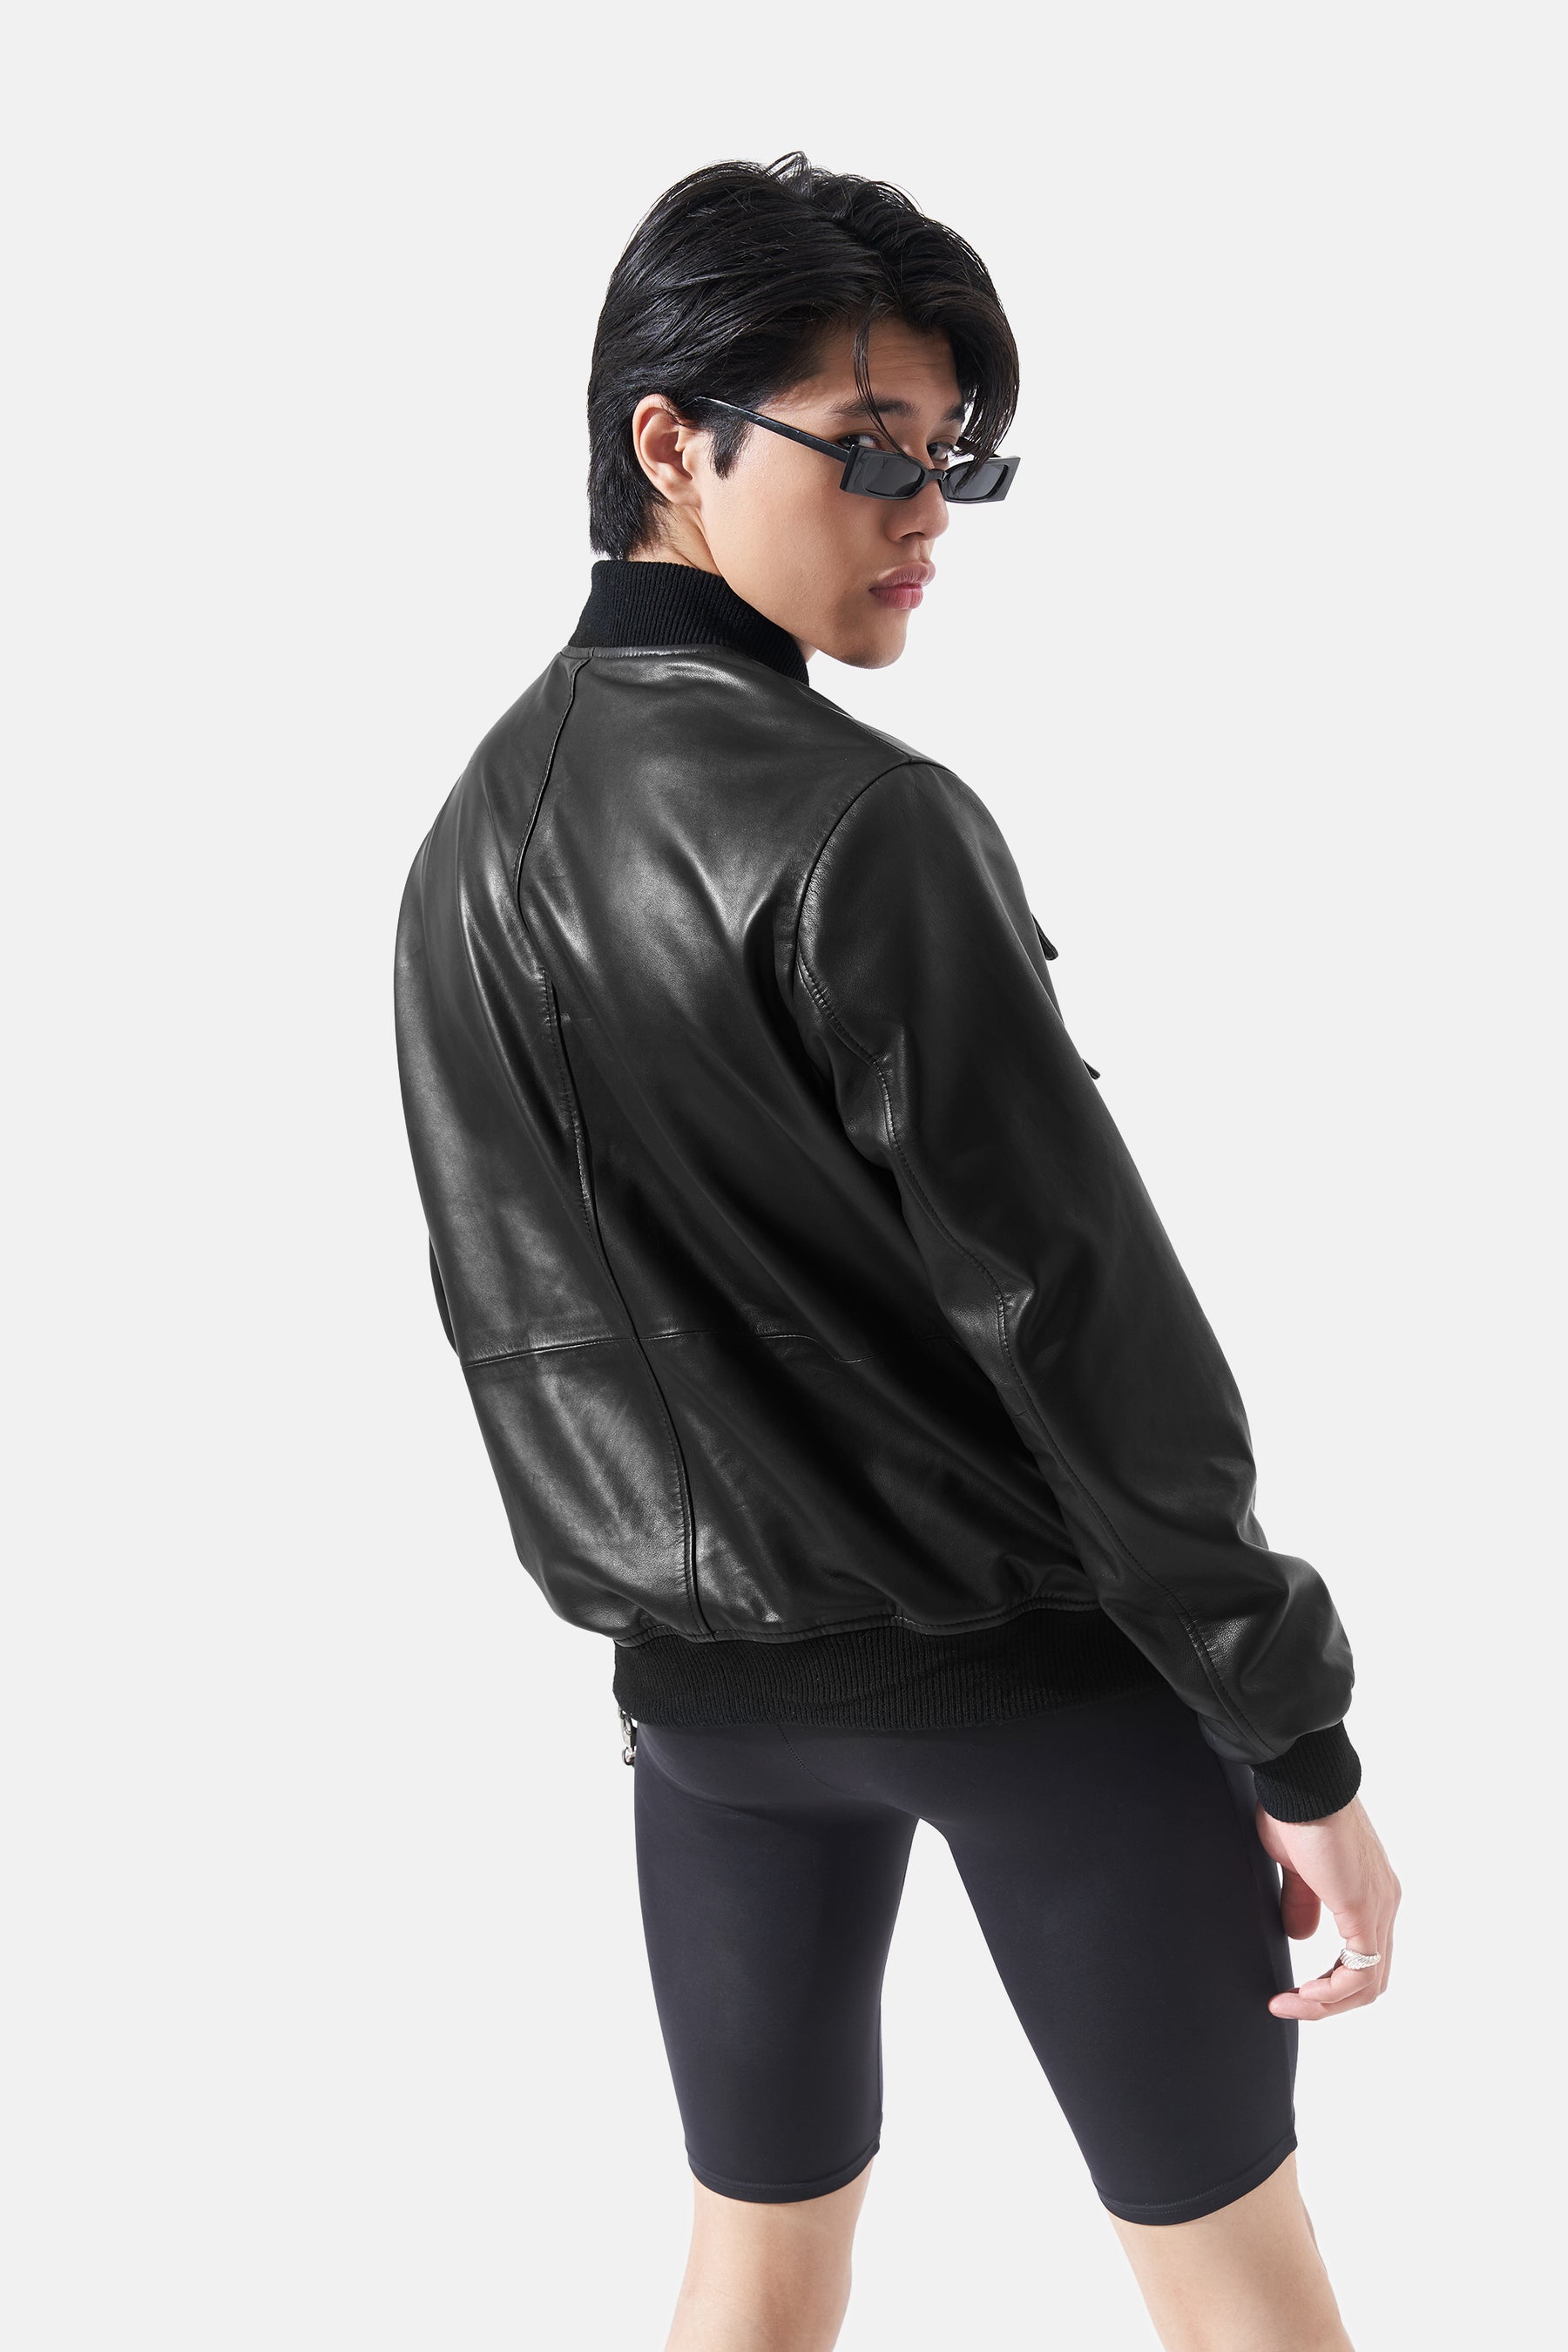 Louis Vuitton Leather Utility Vest - Black Outerwear, Clothing